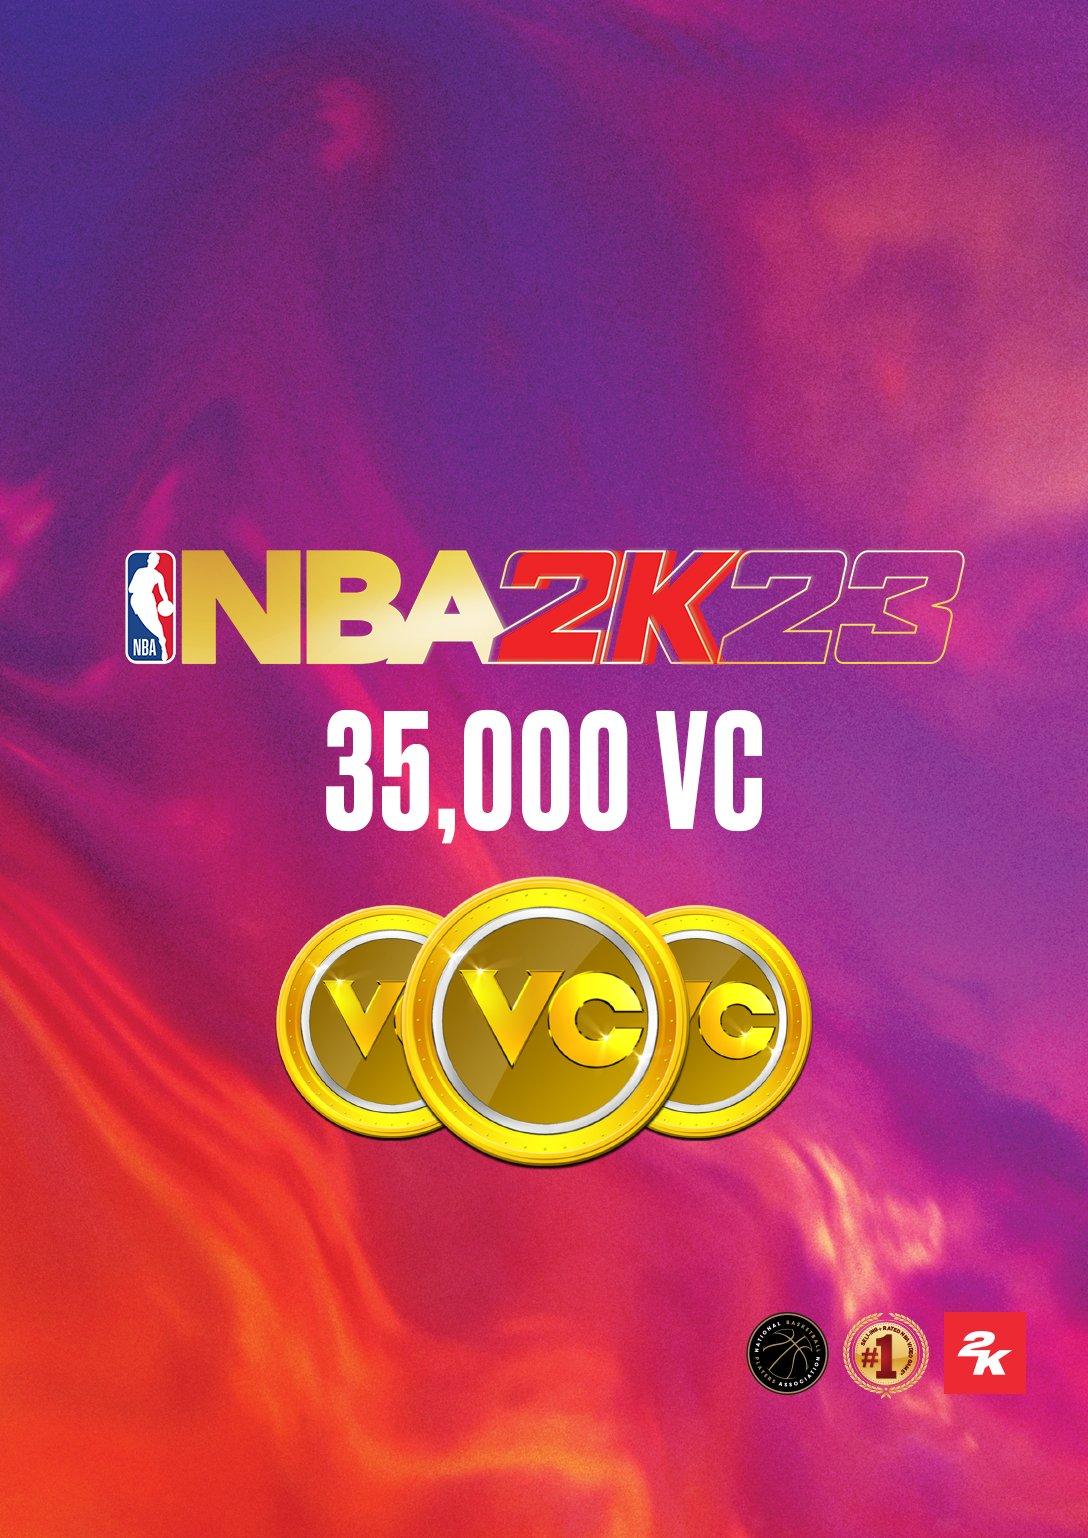 NBA 2K23 - PC | GameStop